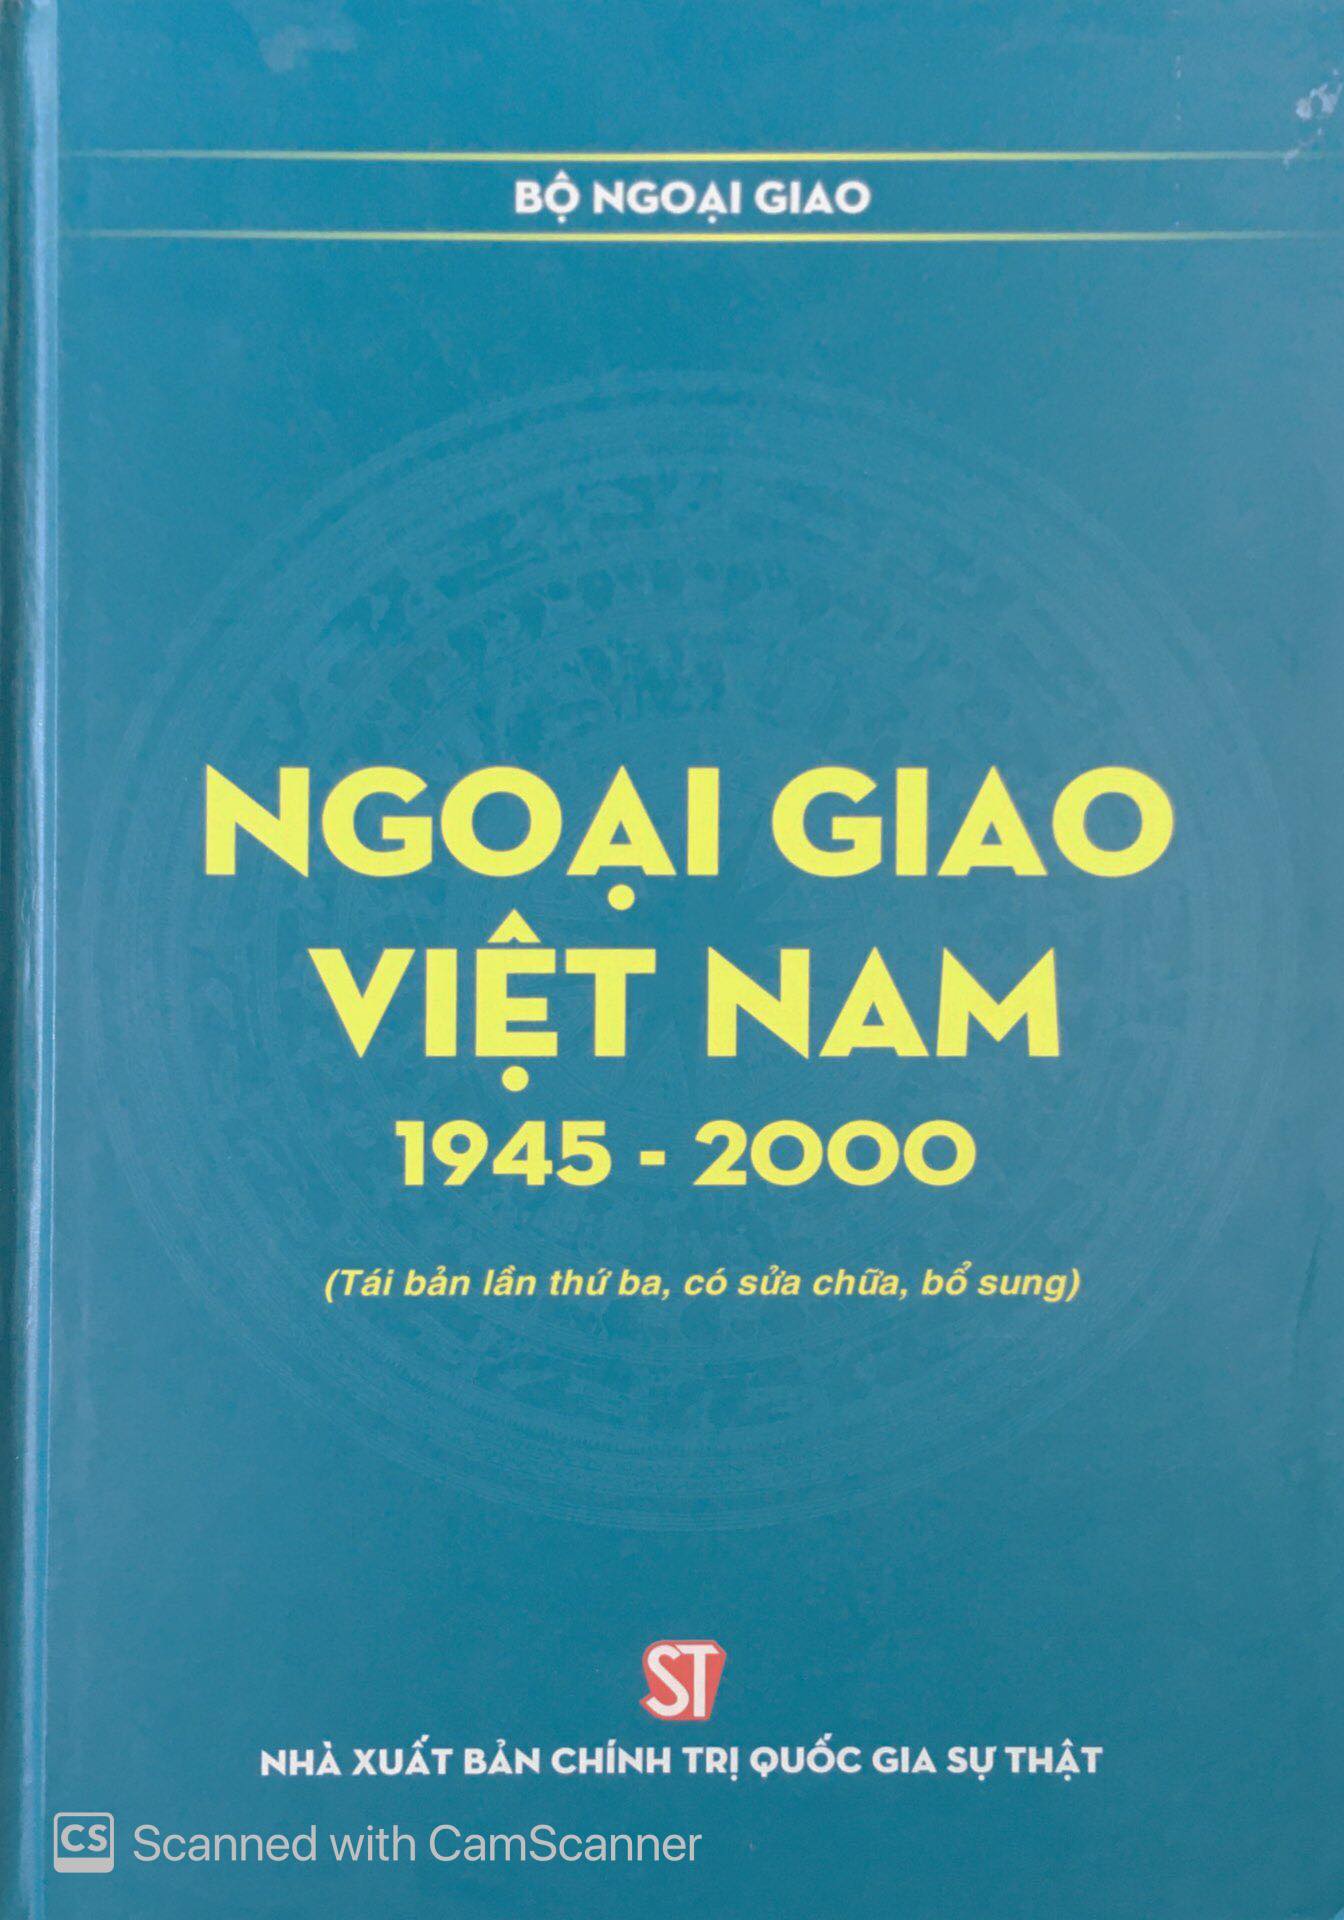 Ngoại giao Việt Nam 1945 - 2000 (Tái bản lần thứ ba, có sửa chữa, bổ sung)